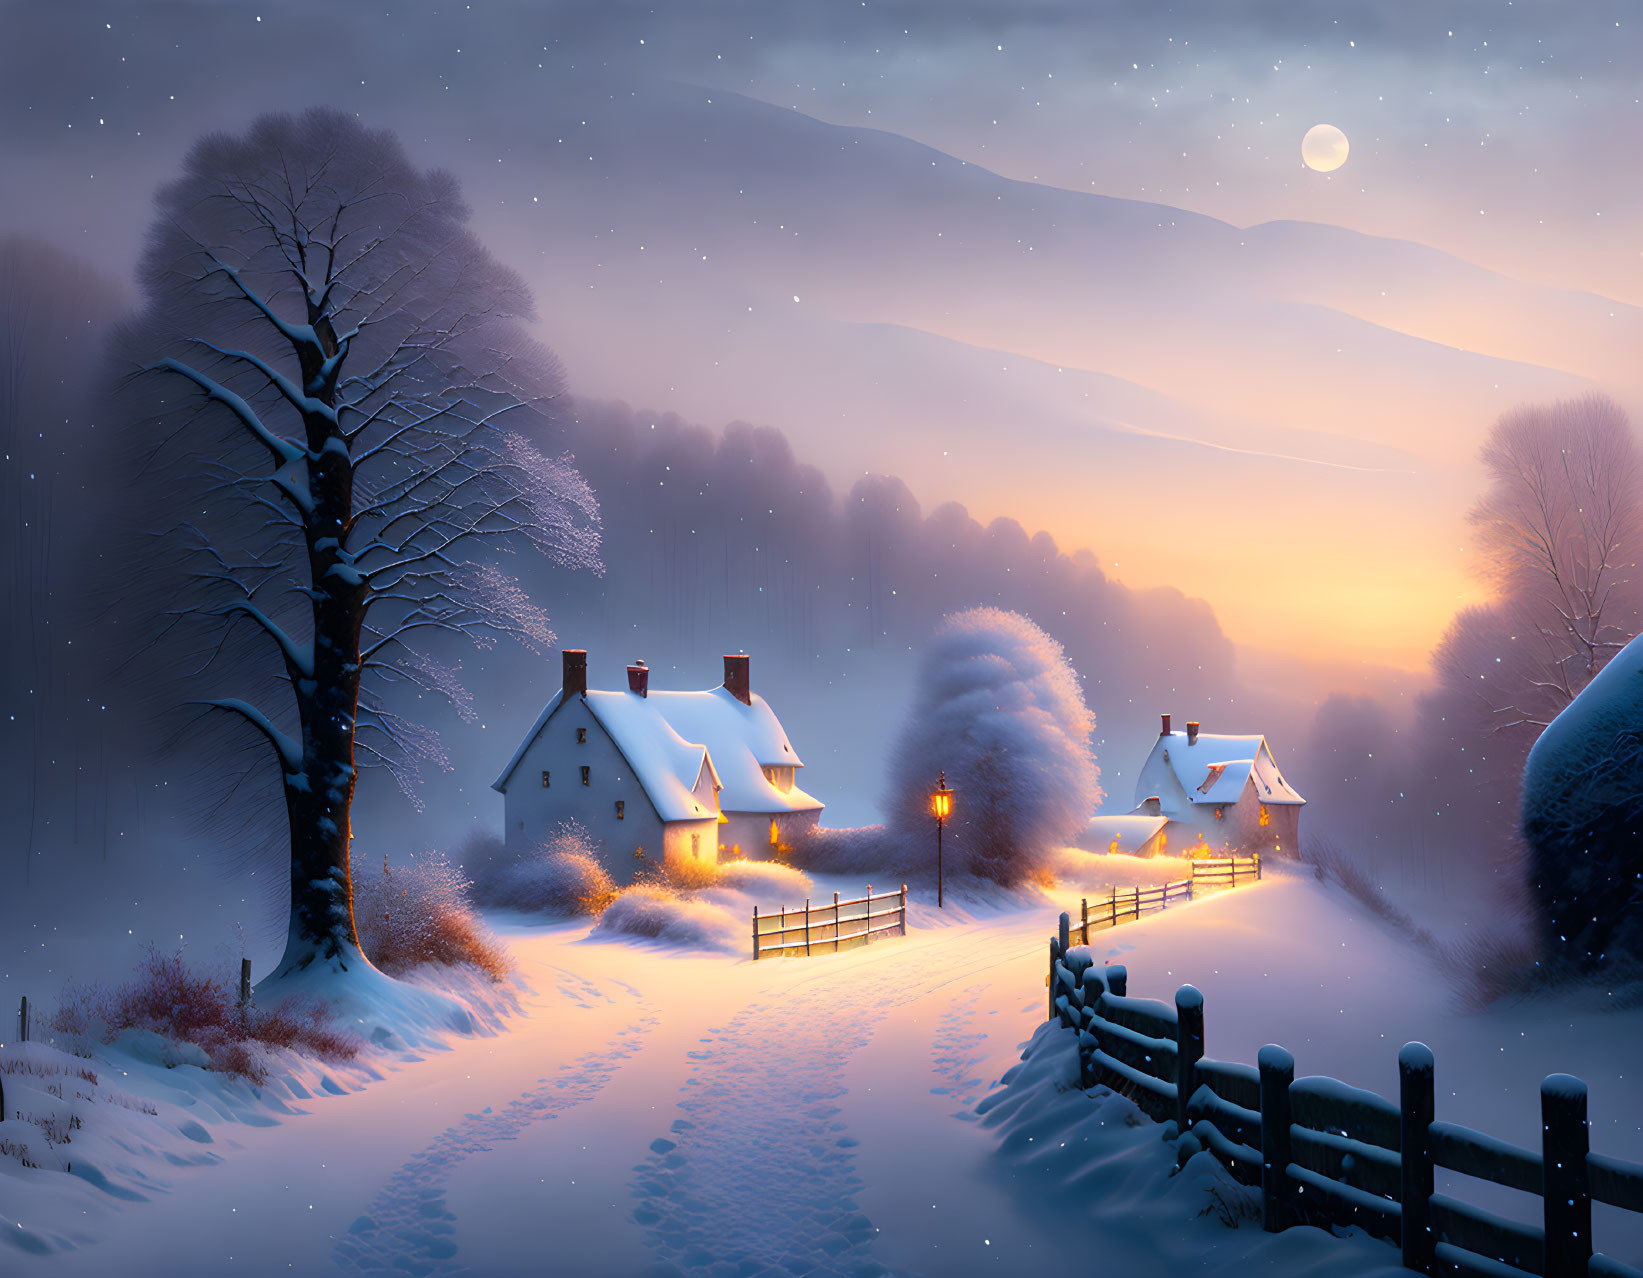 Snowy village 